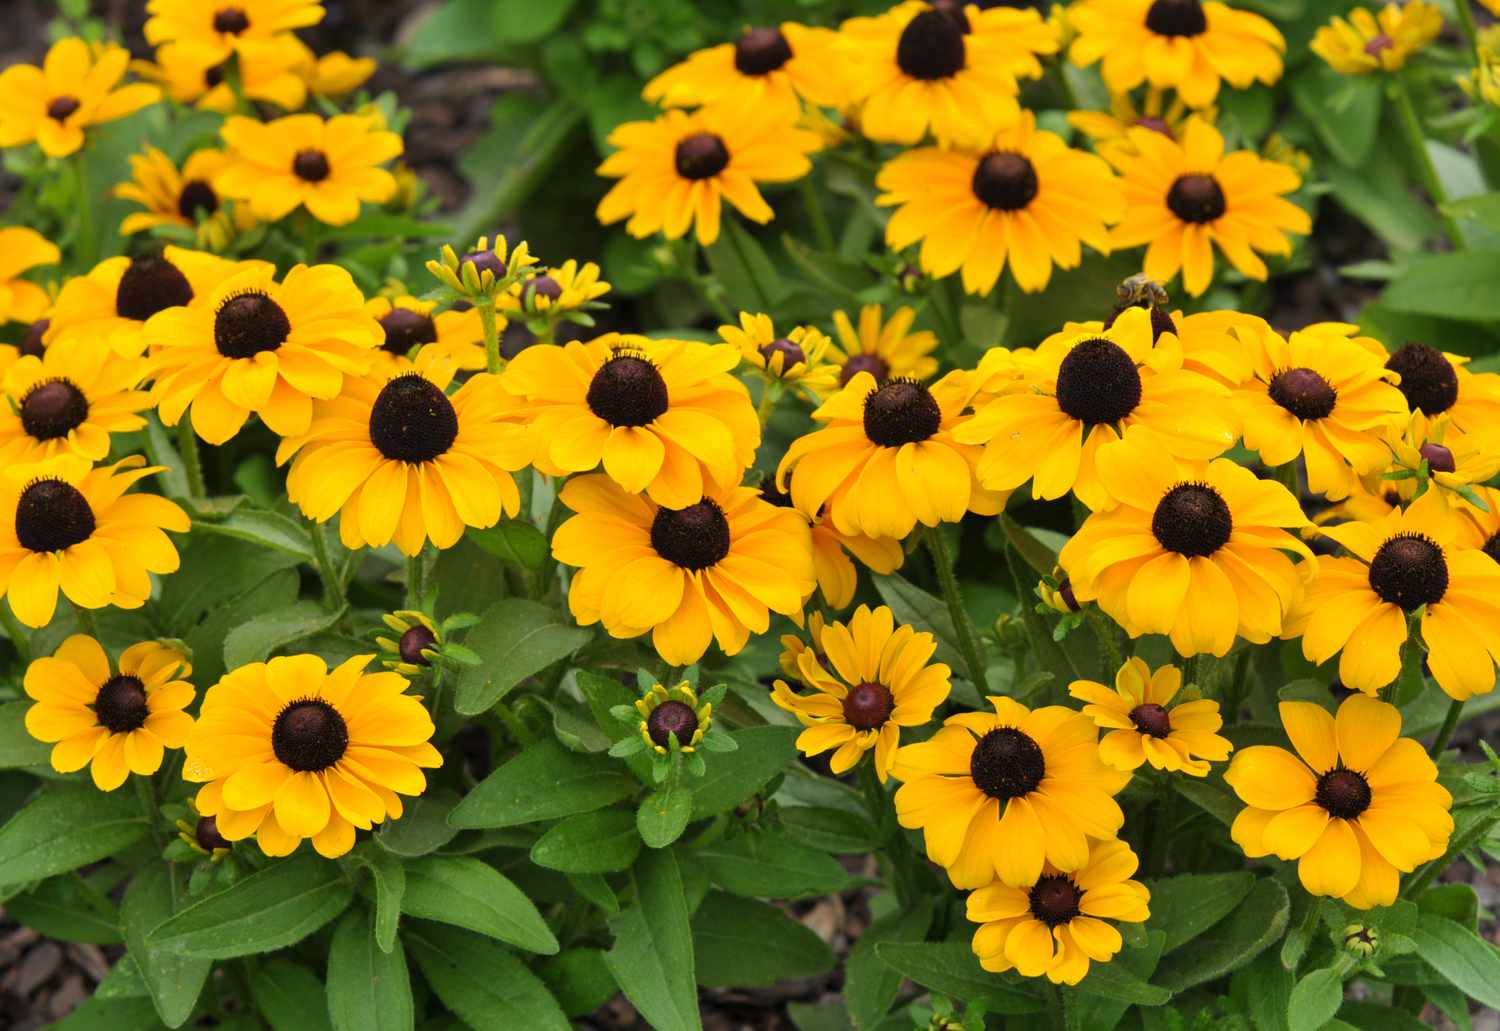 Schwarzäugige Susanpflanzen mit kleinen gelben Blüten und Knospen